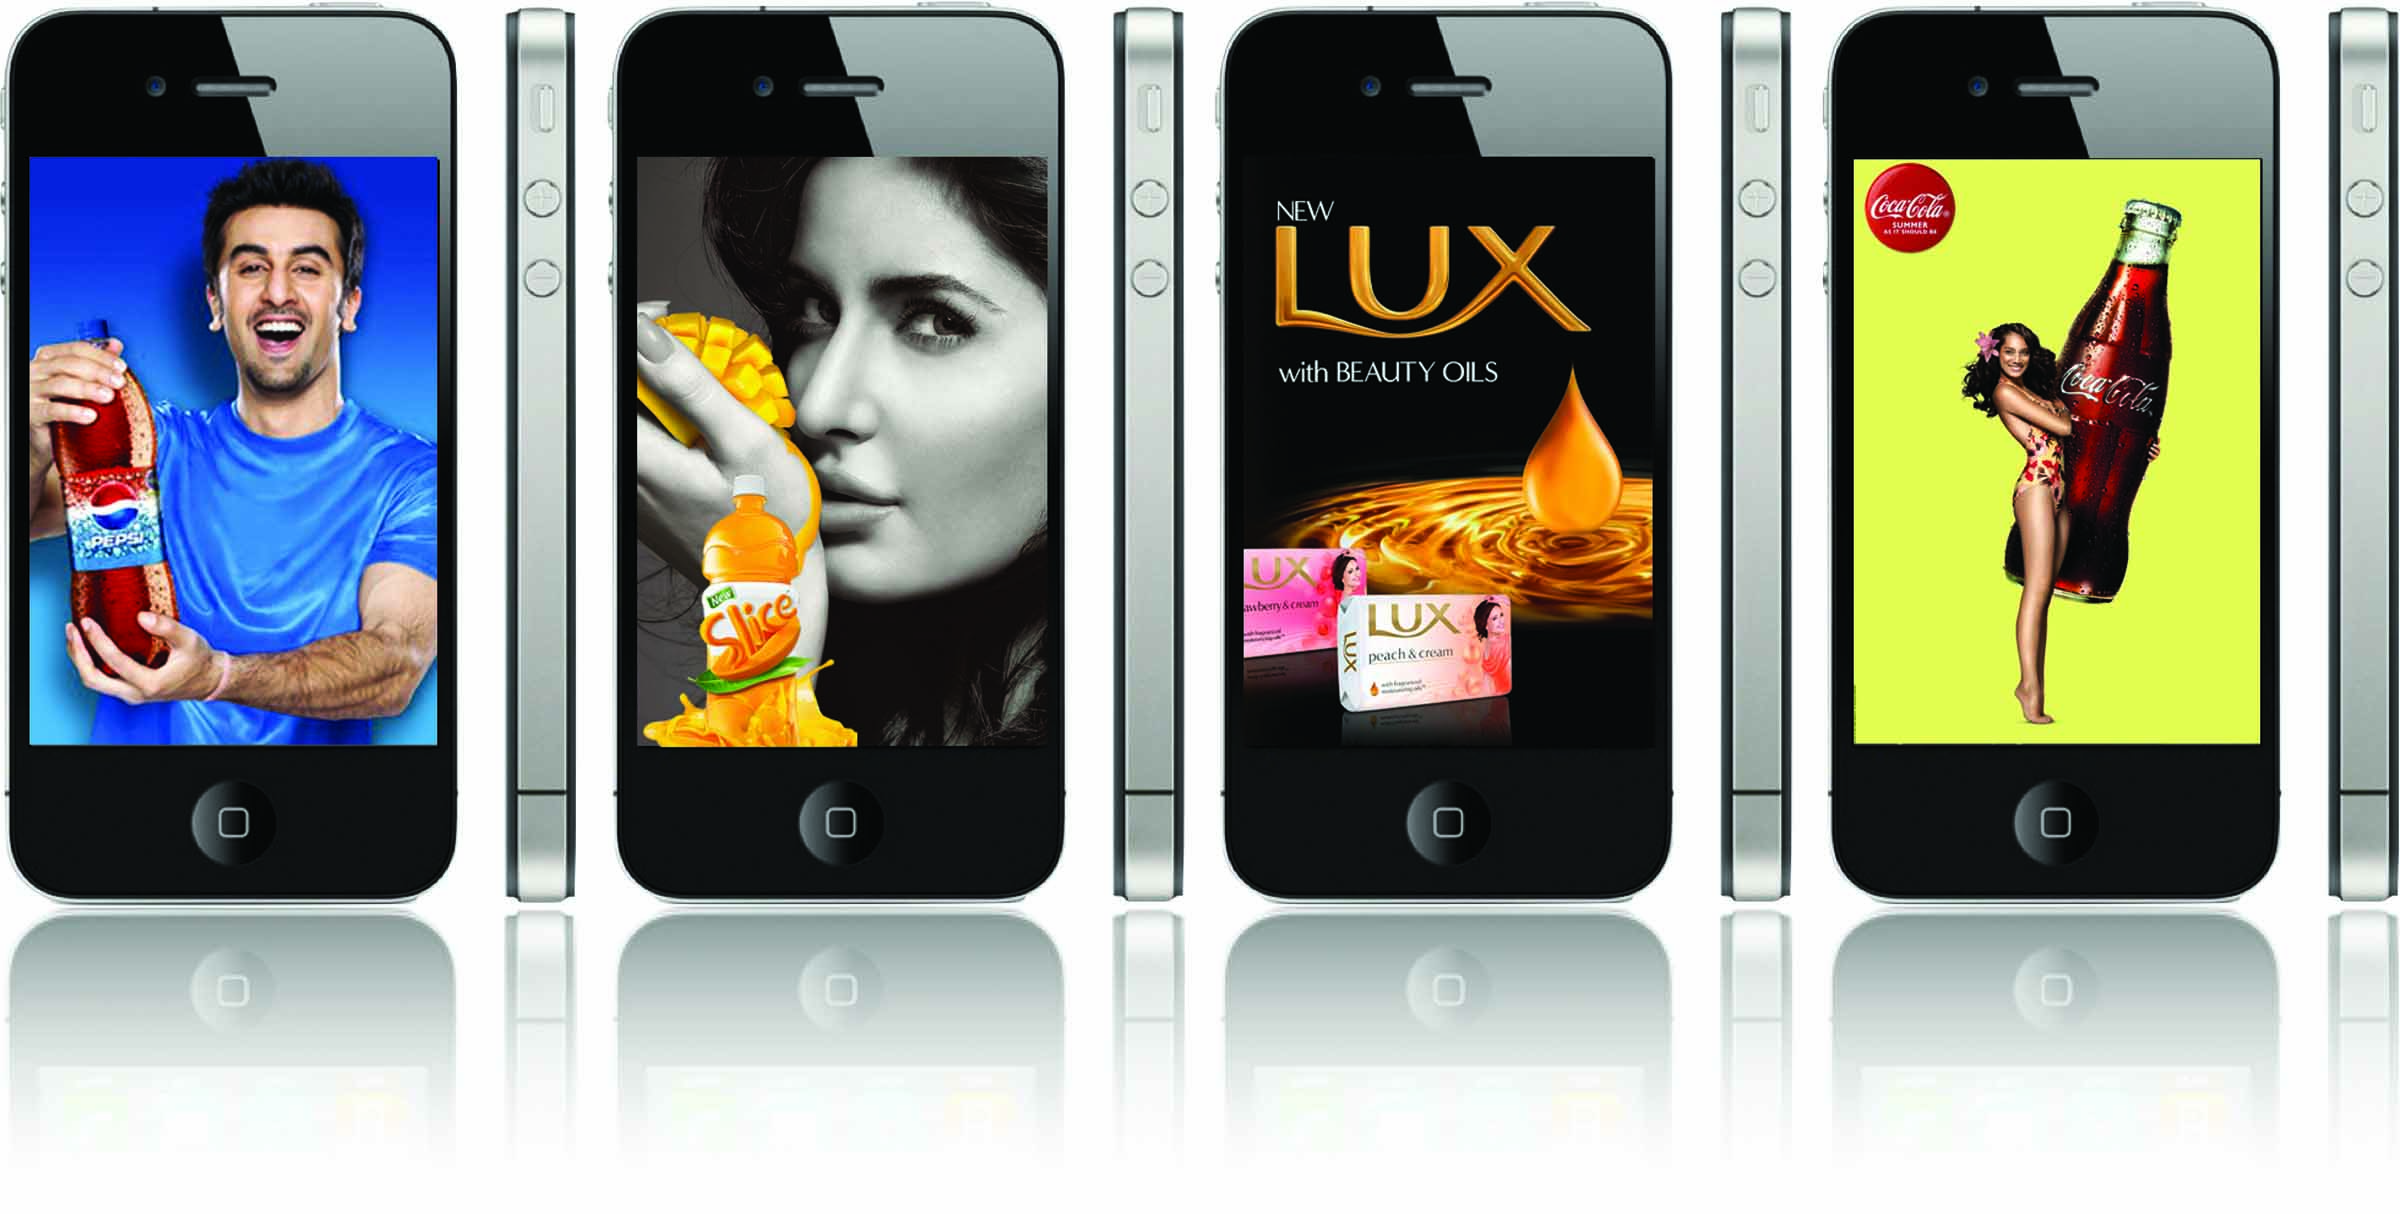 Видеореклама андроид. Реклама смартфона. Реклама сотовых телефонов. Реклама мобильного приложения. Рекламные изображения телефонов.